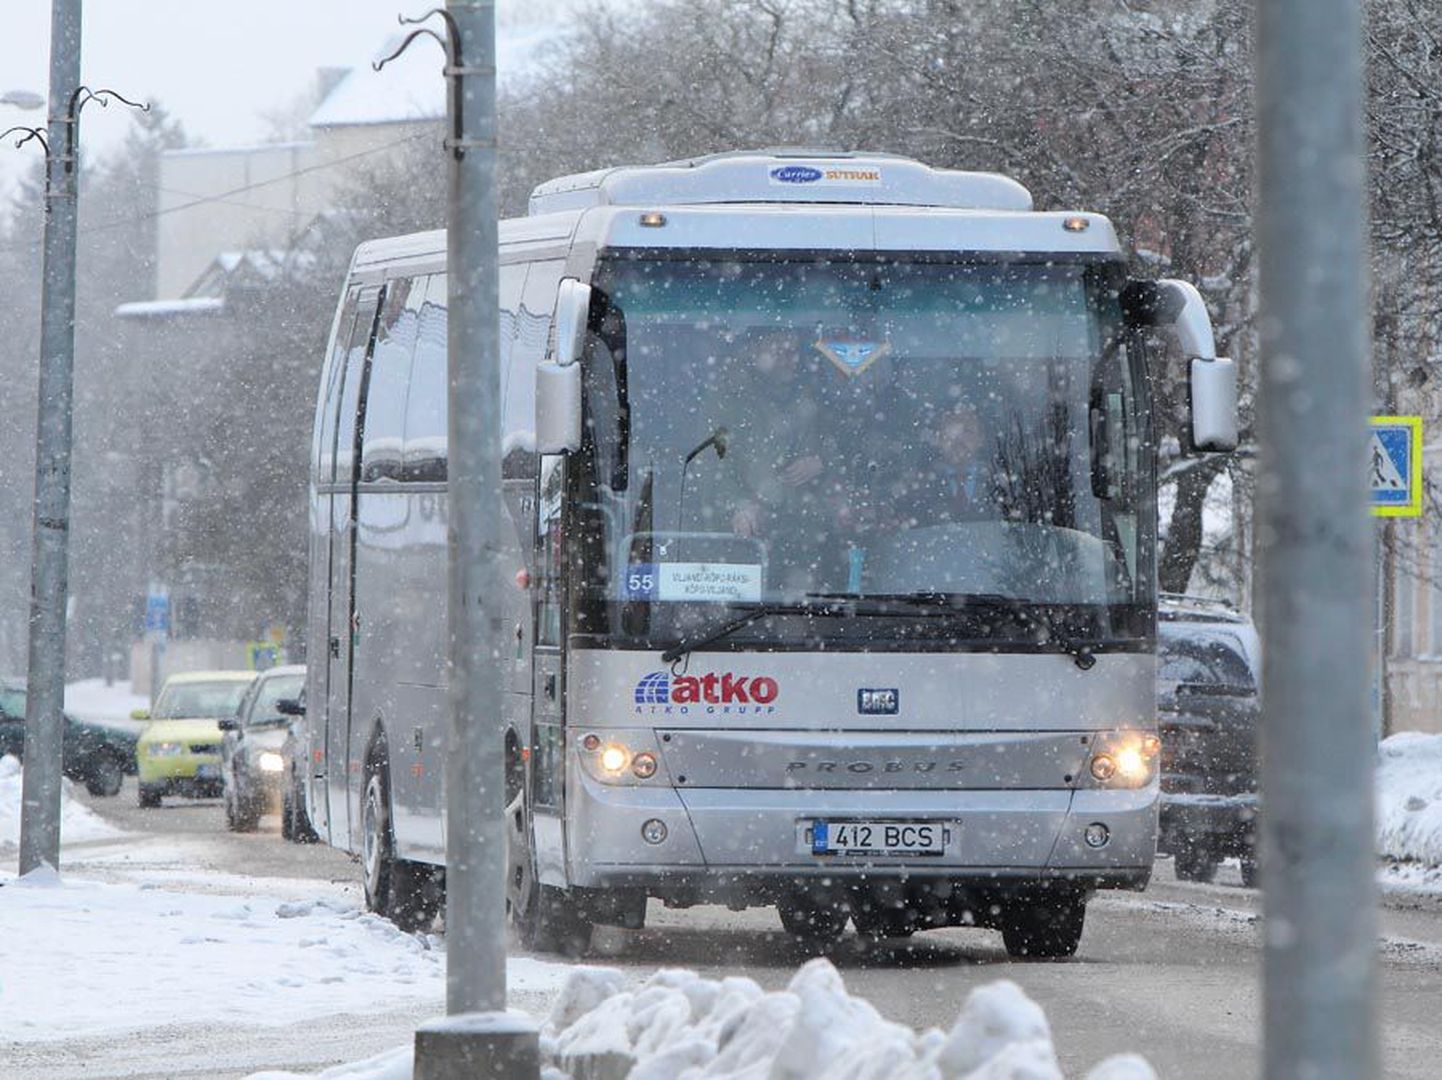 Uus üldtöökokkulepe kergitab bussijuhtide palkasid. Nii ka Viljandimaal.